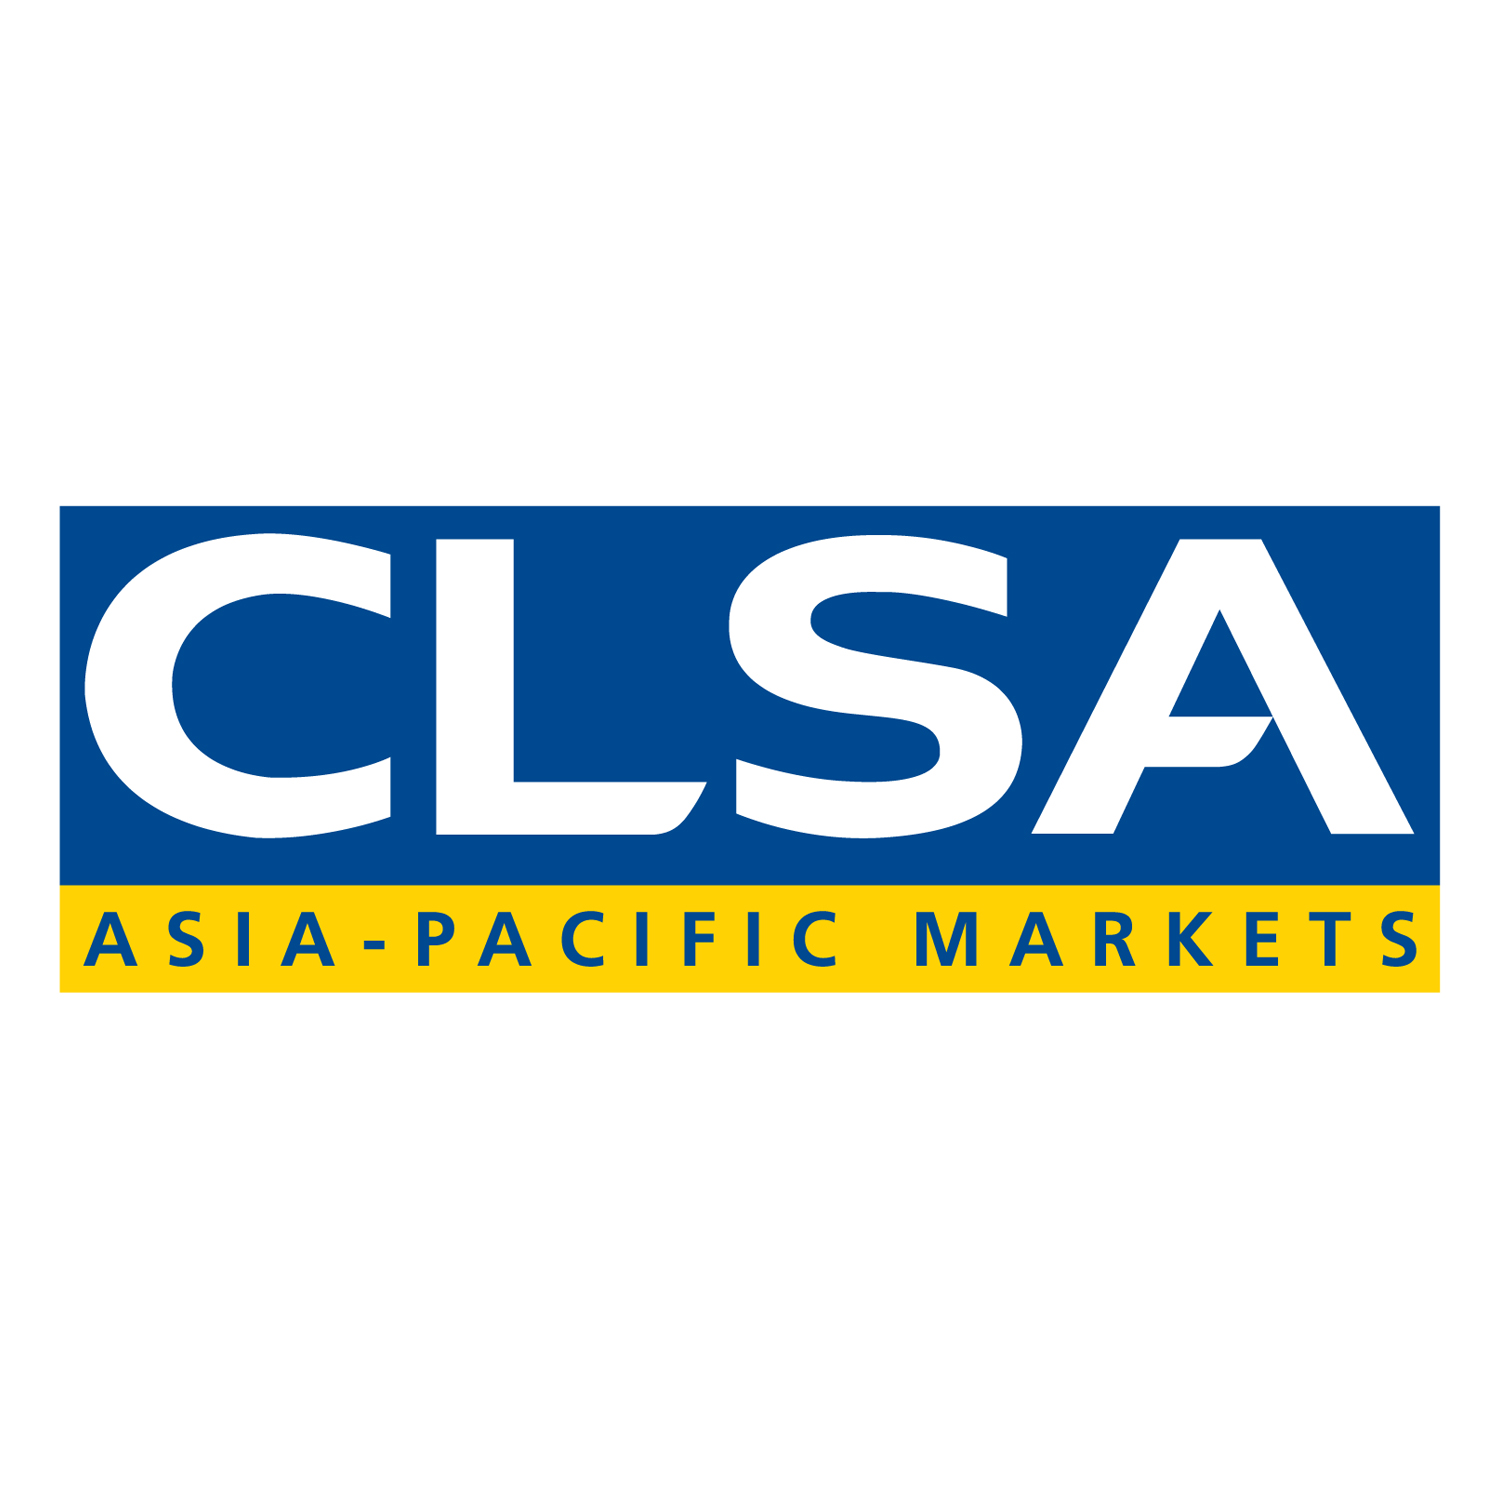 CLSA Logo.jpg